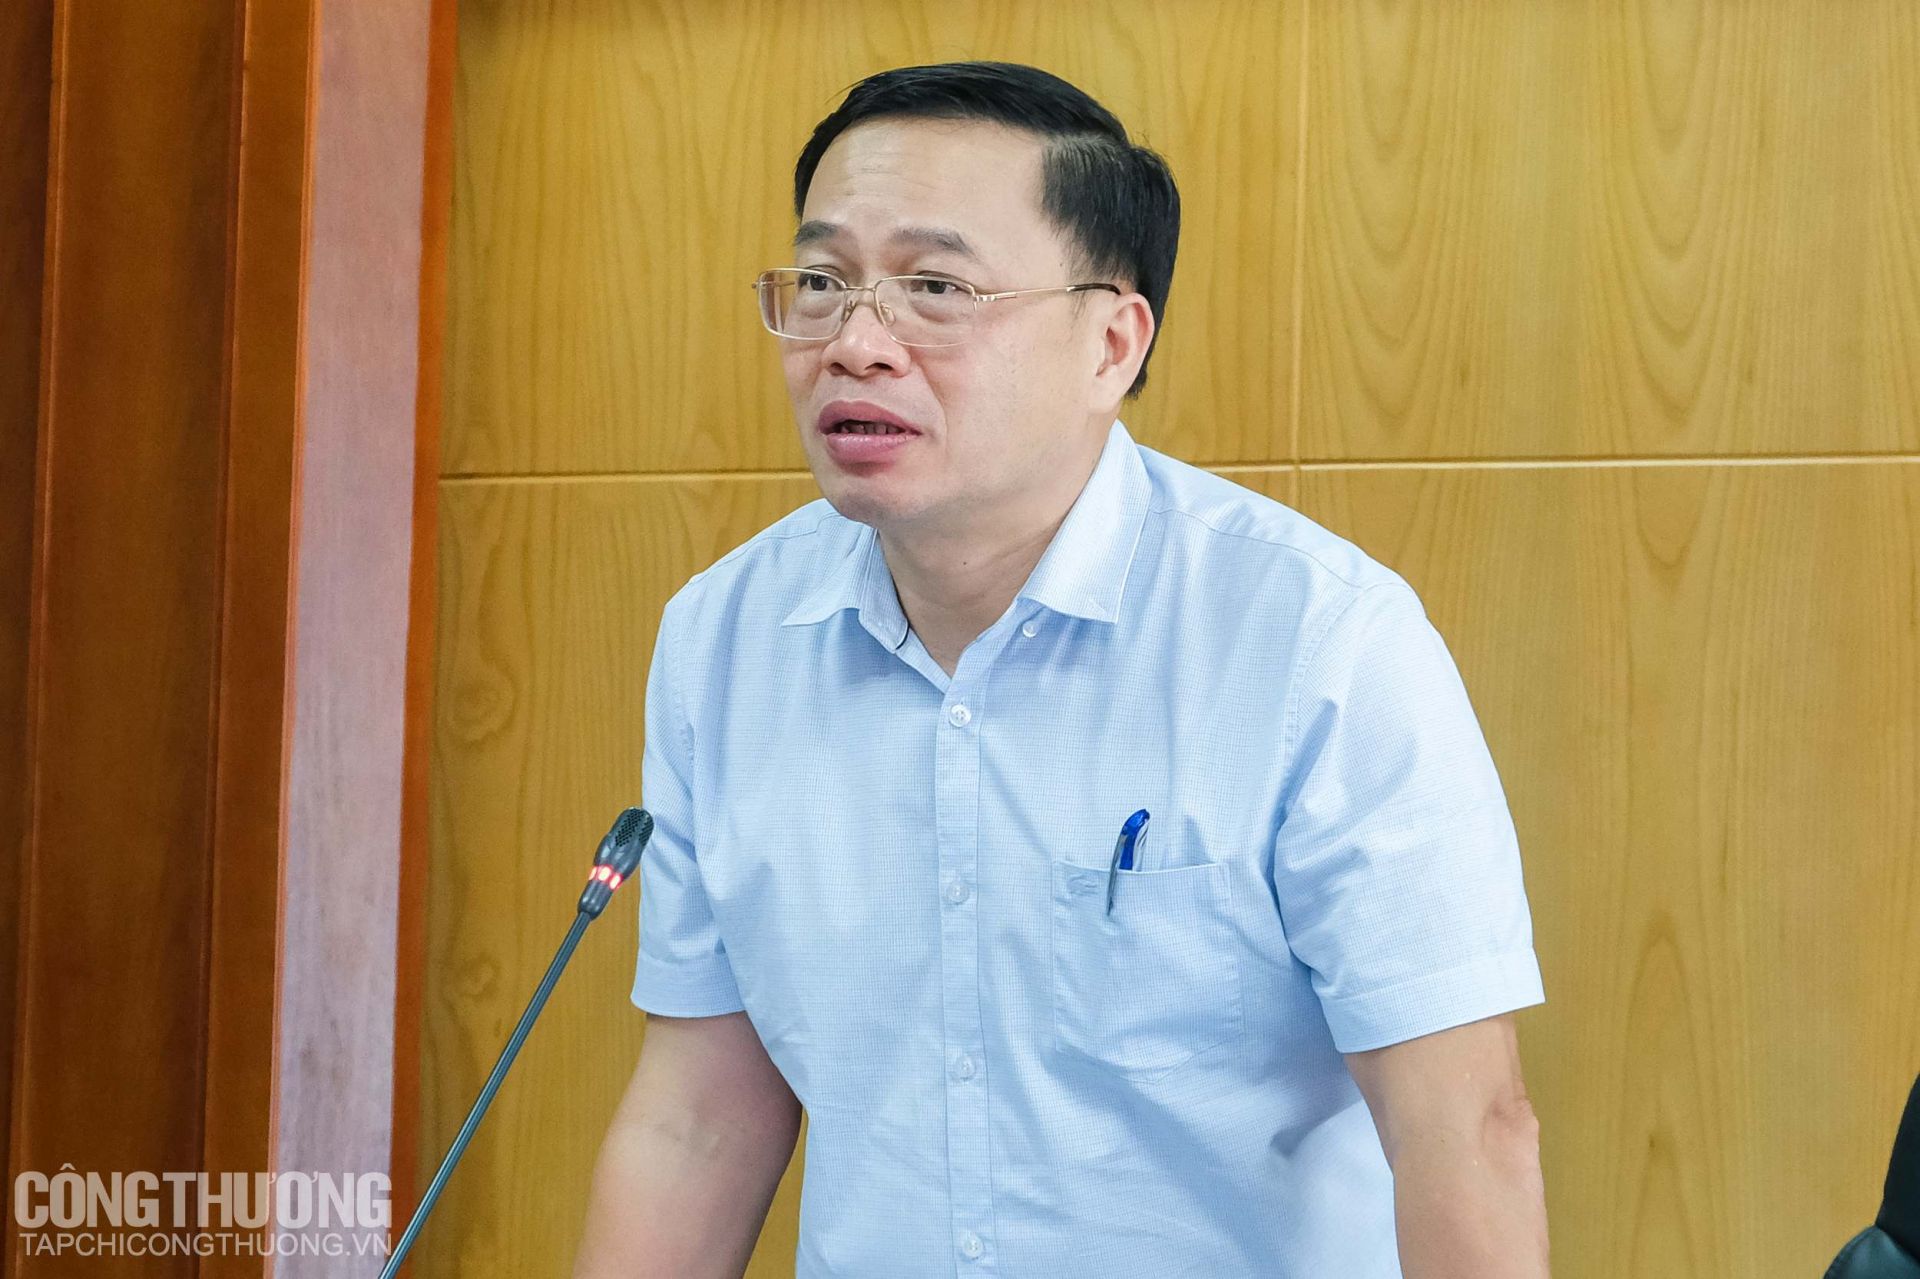 Cục trưởng Cục Điều tiết điện lực Nguyễn Anh Tuấn yêu cầu EVN và các đơn vị điện lực tiếp tục bám sát các văn bản hướng dẫn để thực hiện giảm giá điện, giảm tiền điện